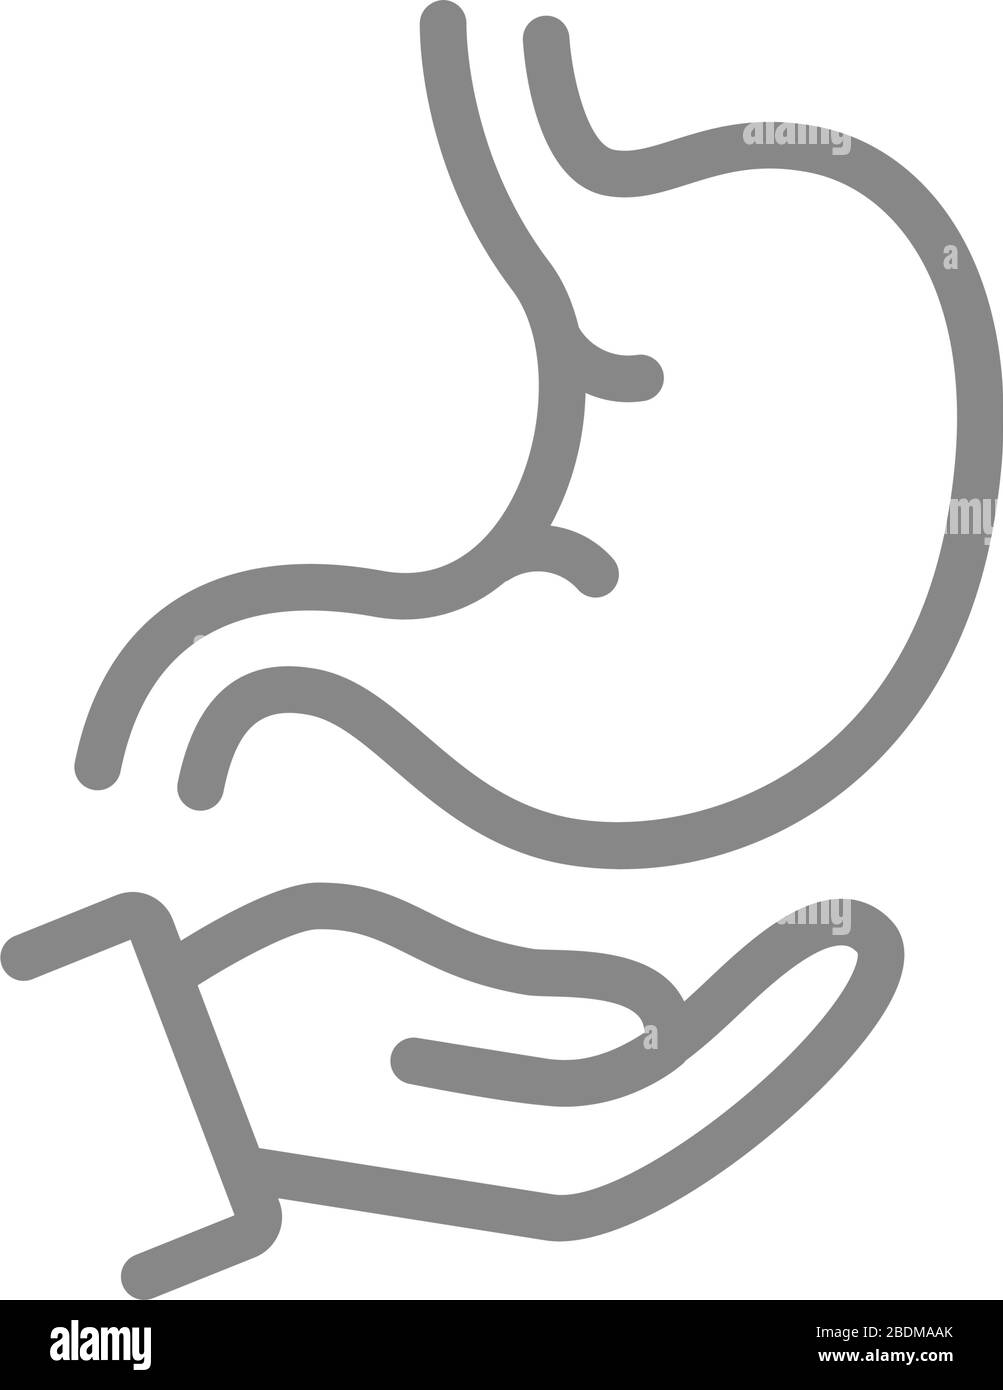 Icône estomac sur la ligne de main. Traitement des organes humains, symbole de prévention des maladies Illustration de Vecteur